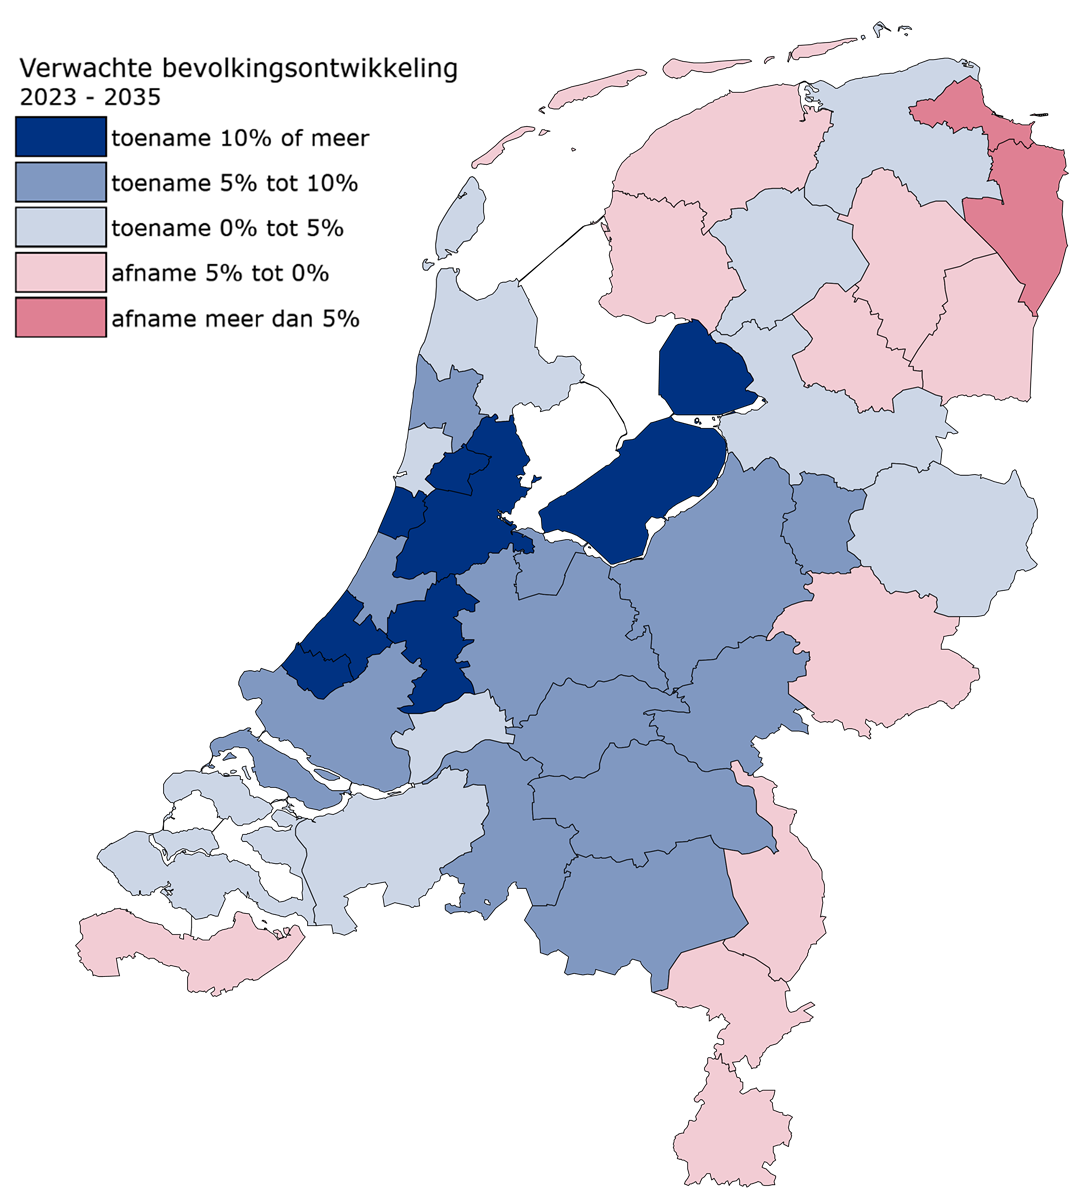 Kaartje van Nederland met de verwachte bevolkingsgroei